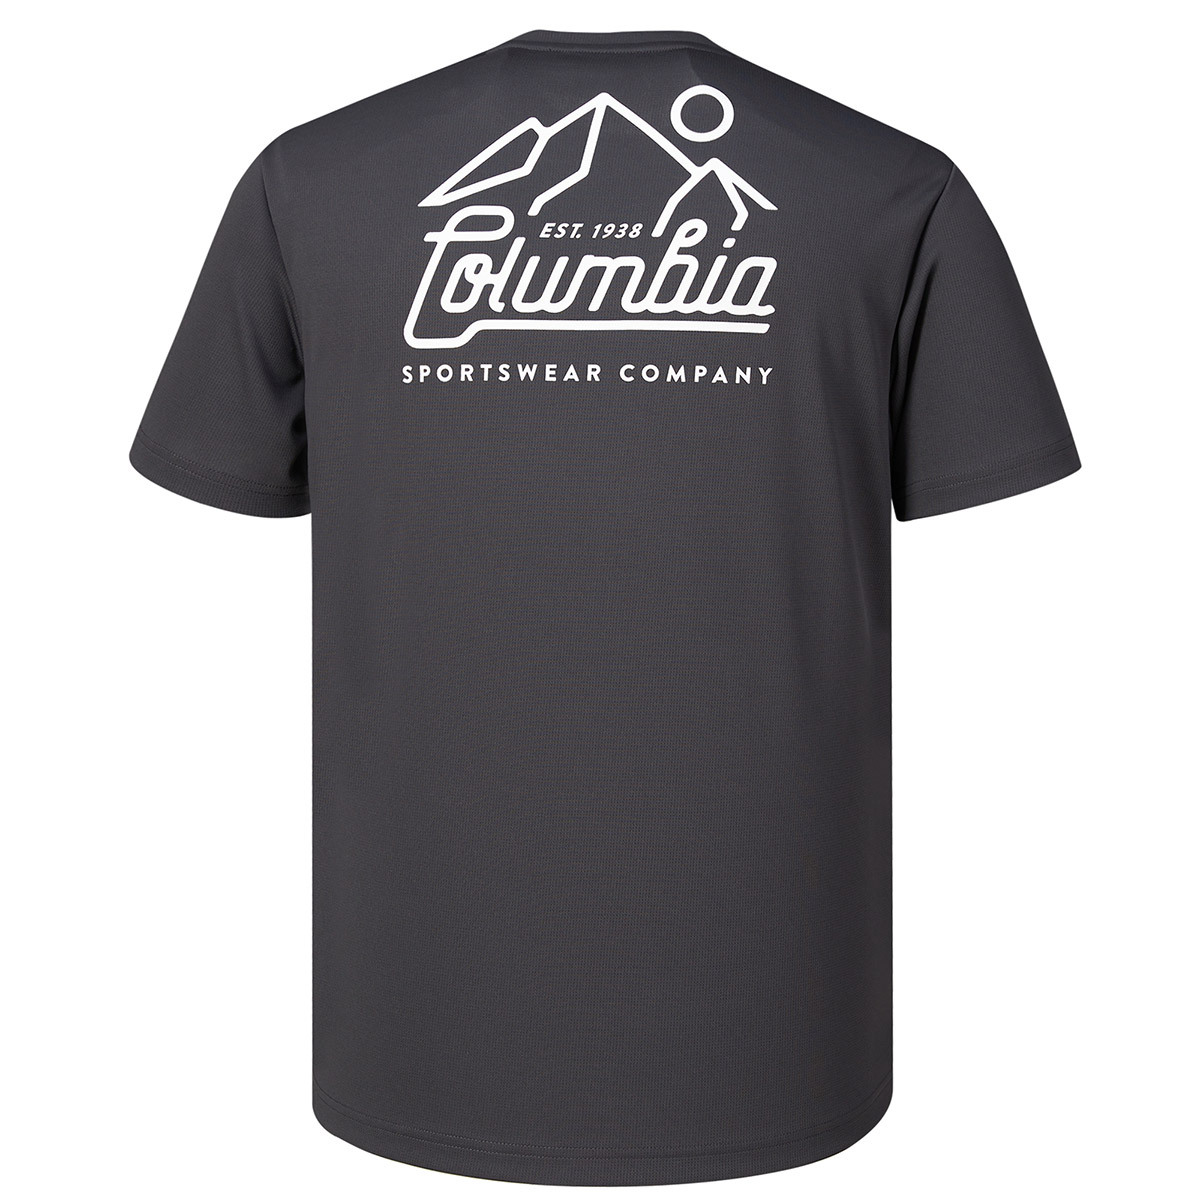 컬럼비아 남성 반소매 티셔츠 - 차콜